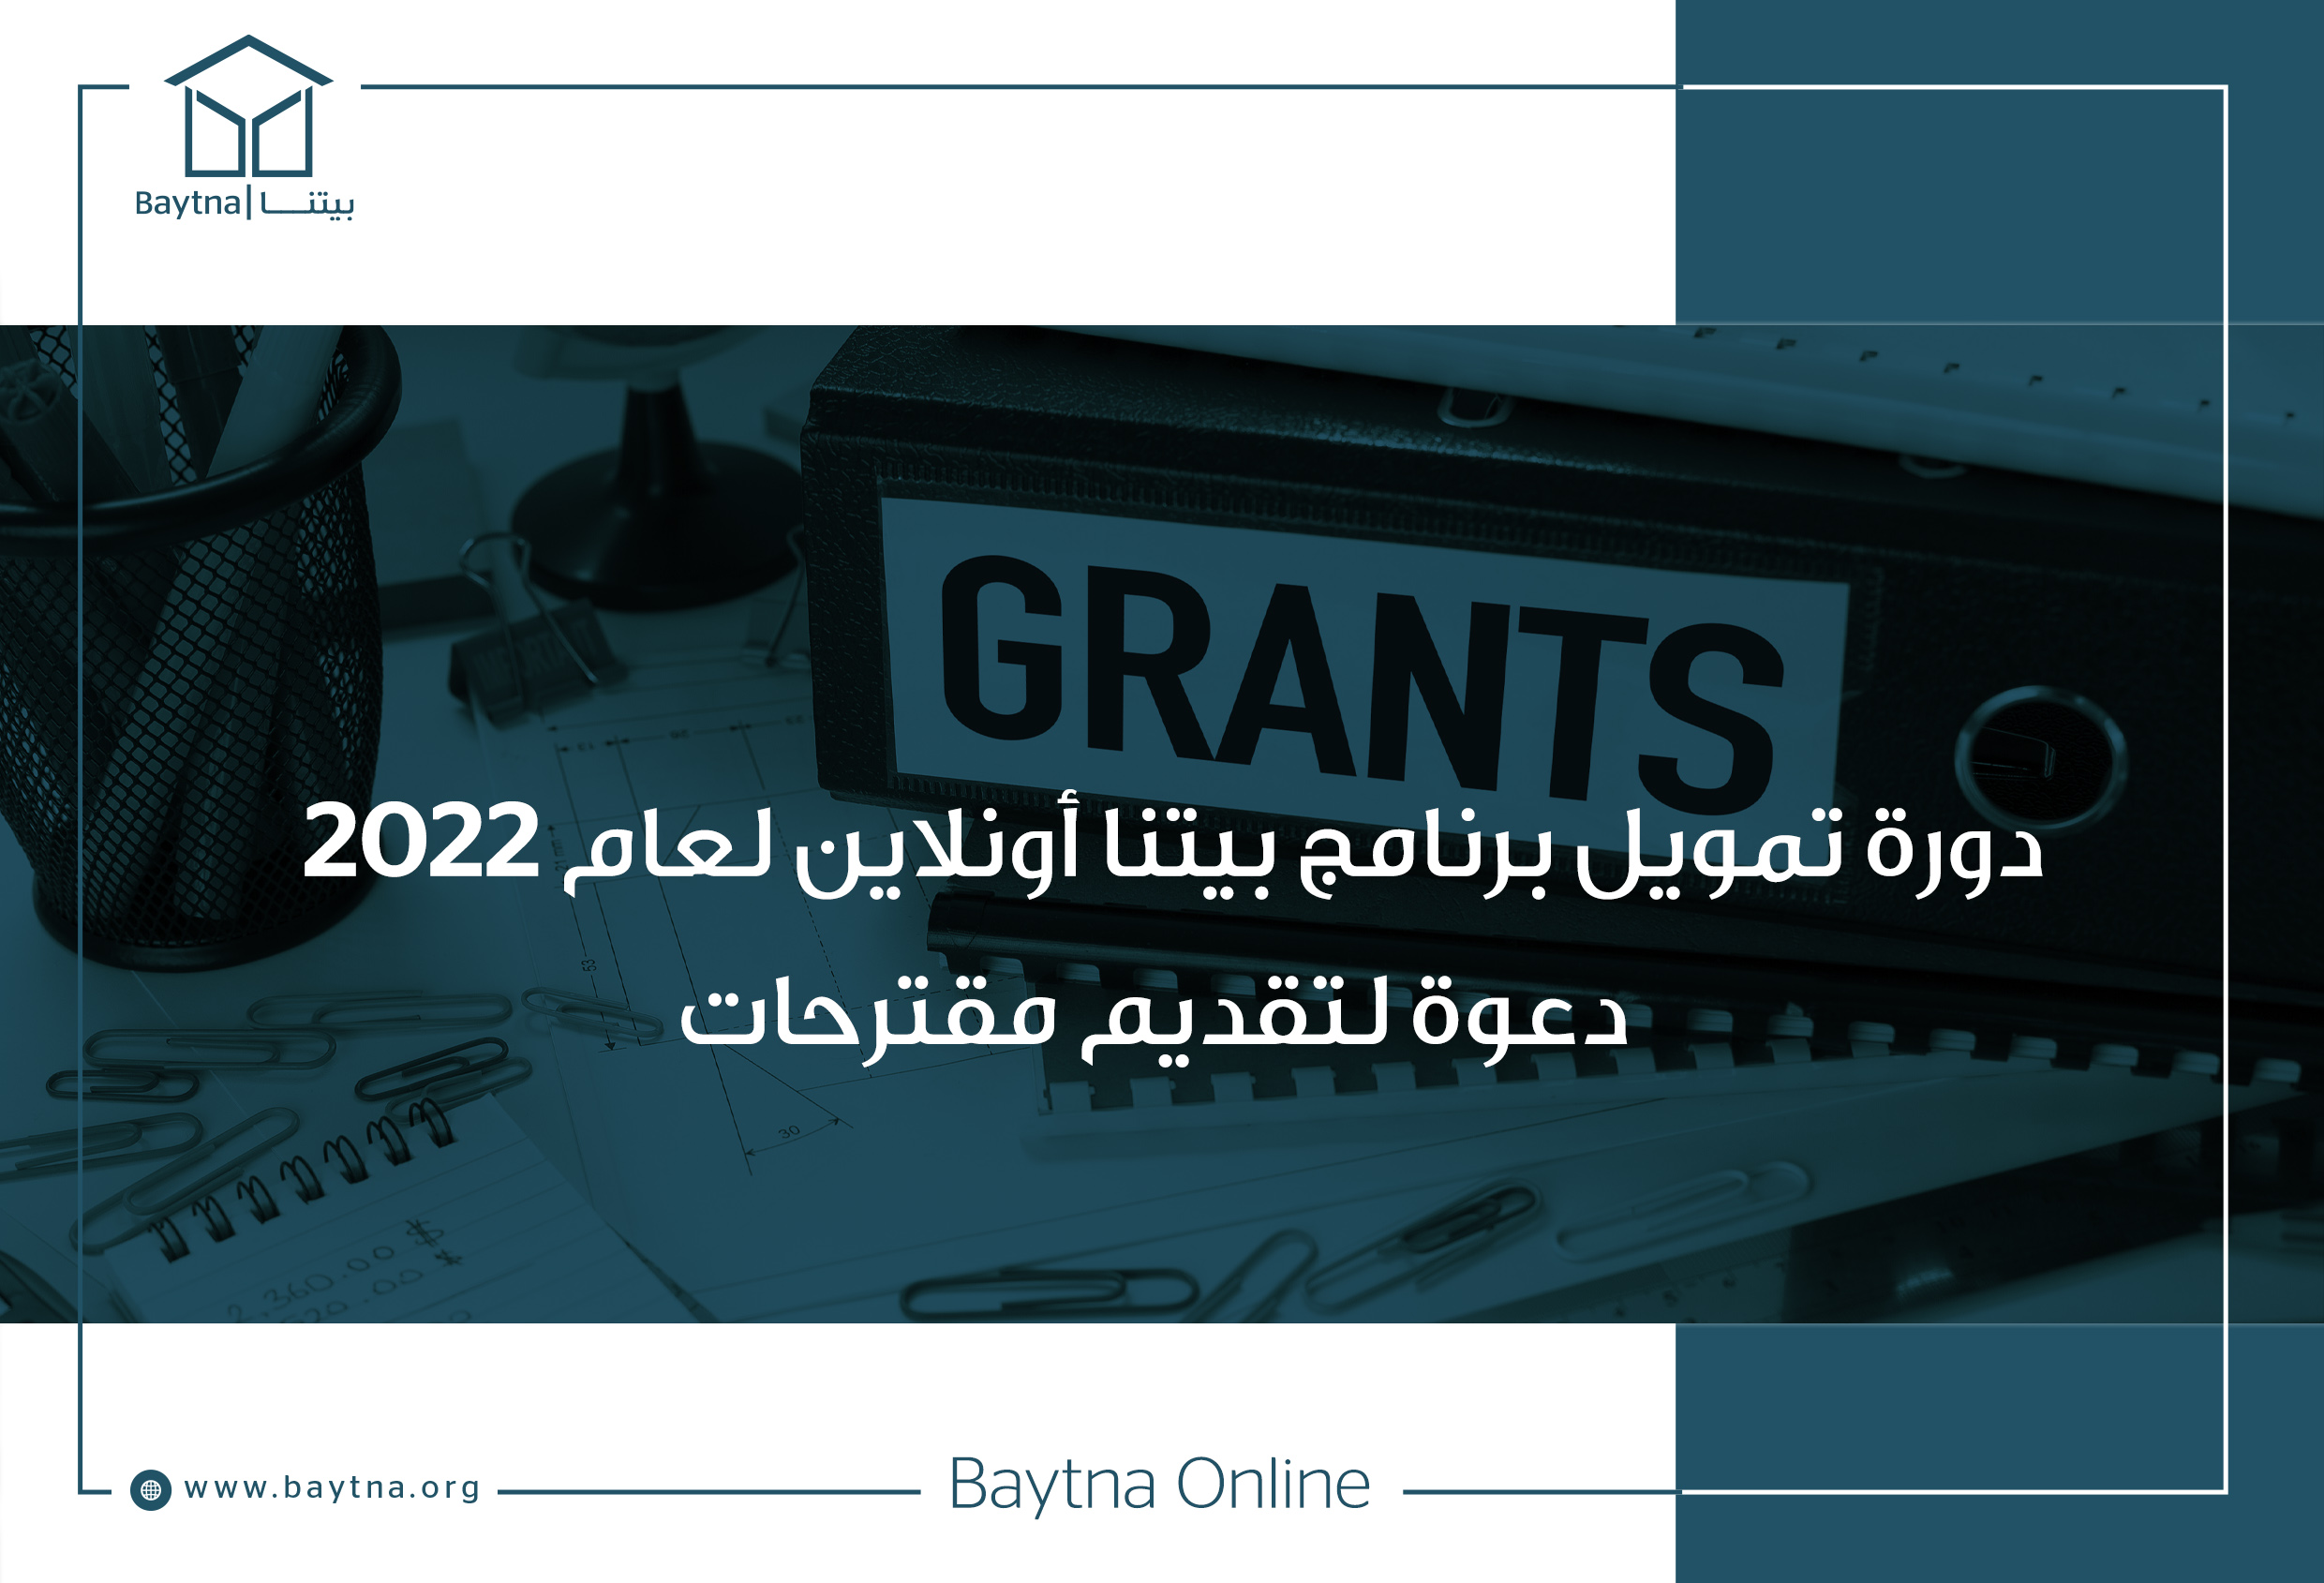 دورة تمويل برنامج بيتنا أونلاين لعام 2022